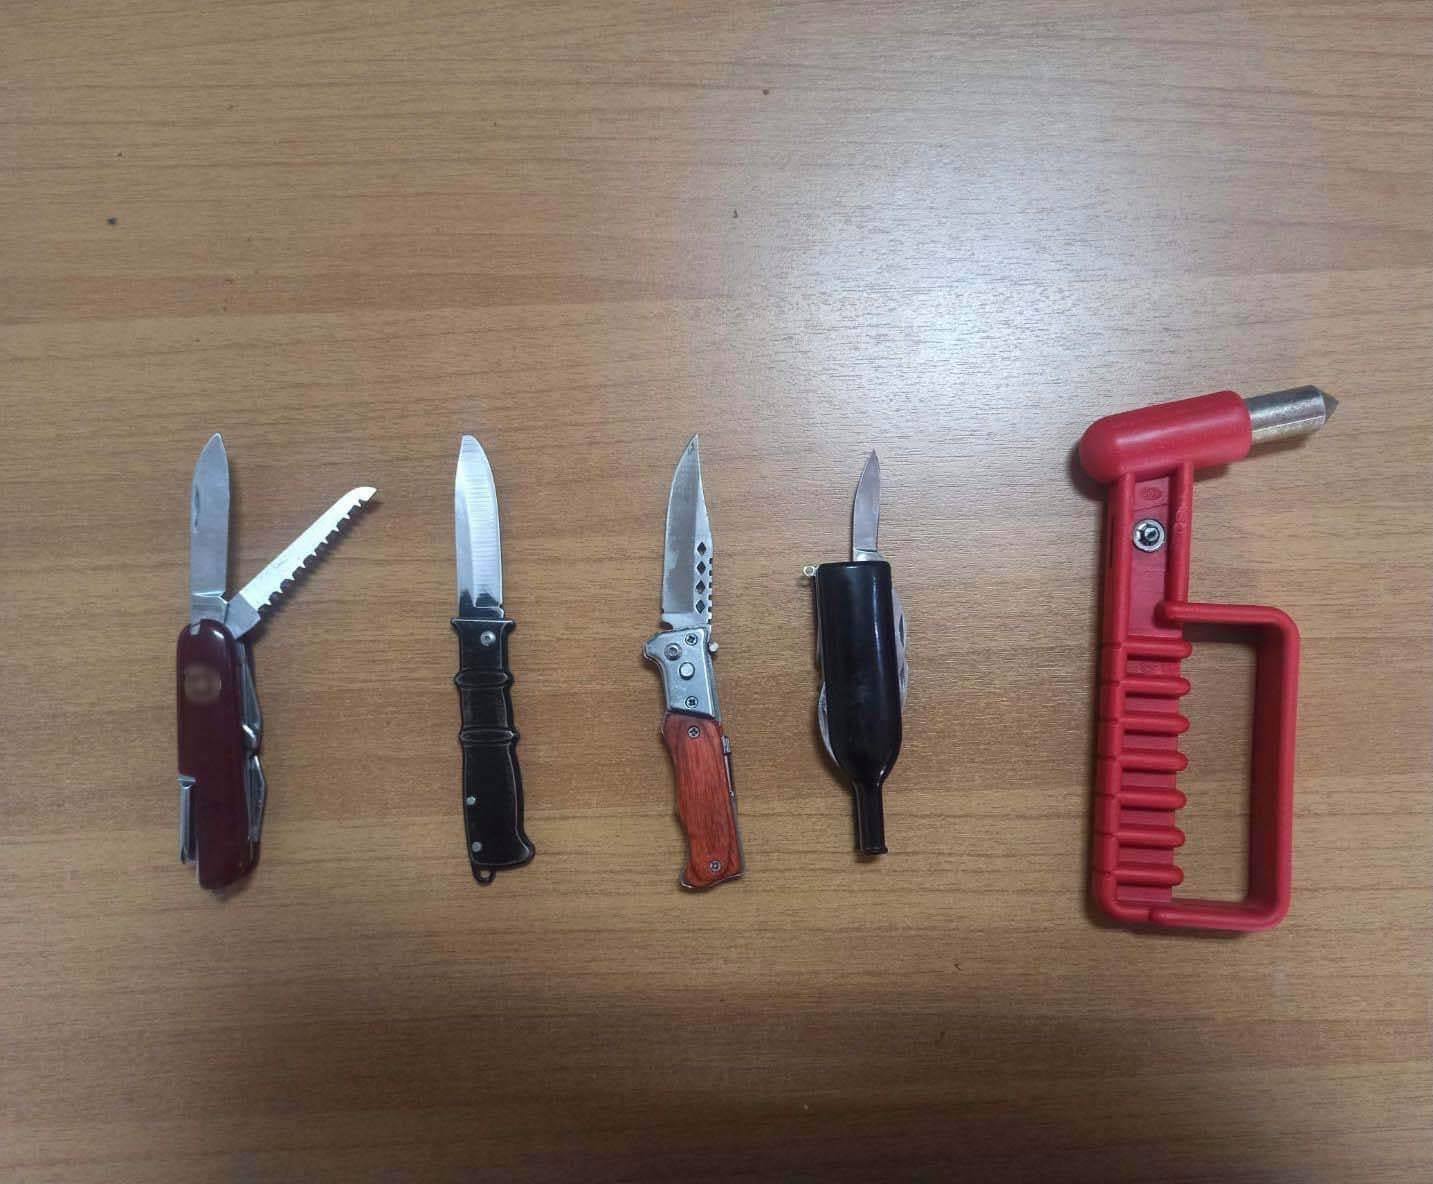 ΕΛΑΣ για Σταυρούπολη: Κουβαλούσαν μαχαίρια και σιδερογροθιές